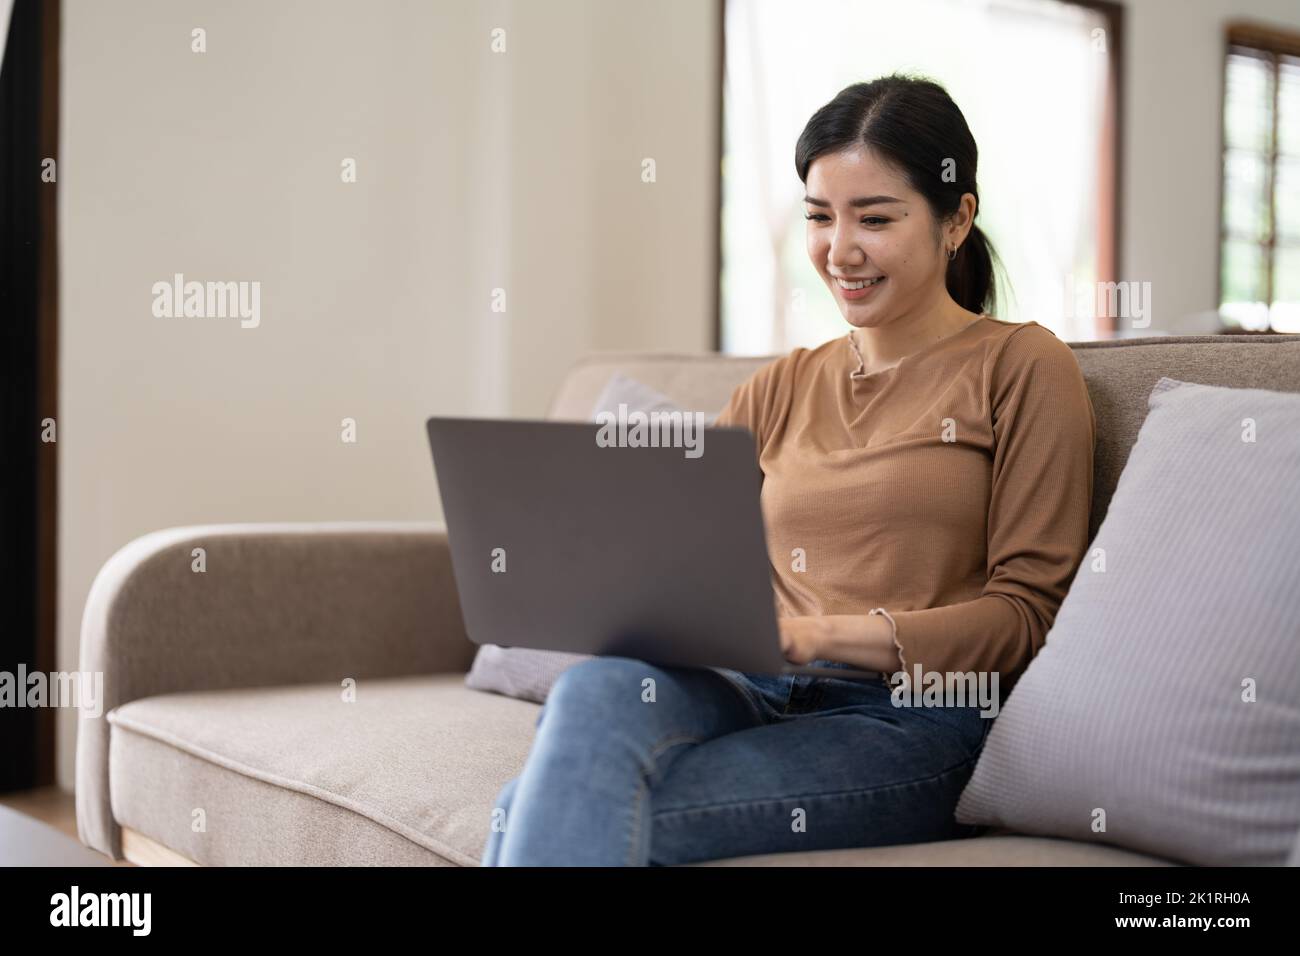 Jeune femme asiatique qui a une conversation en discutant avec un ordinateur portable à la maison. Travail à domicile, visioconférence, appel vidéo de réunion en ligne, virtuel Banque D'Images